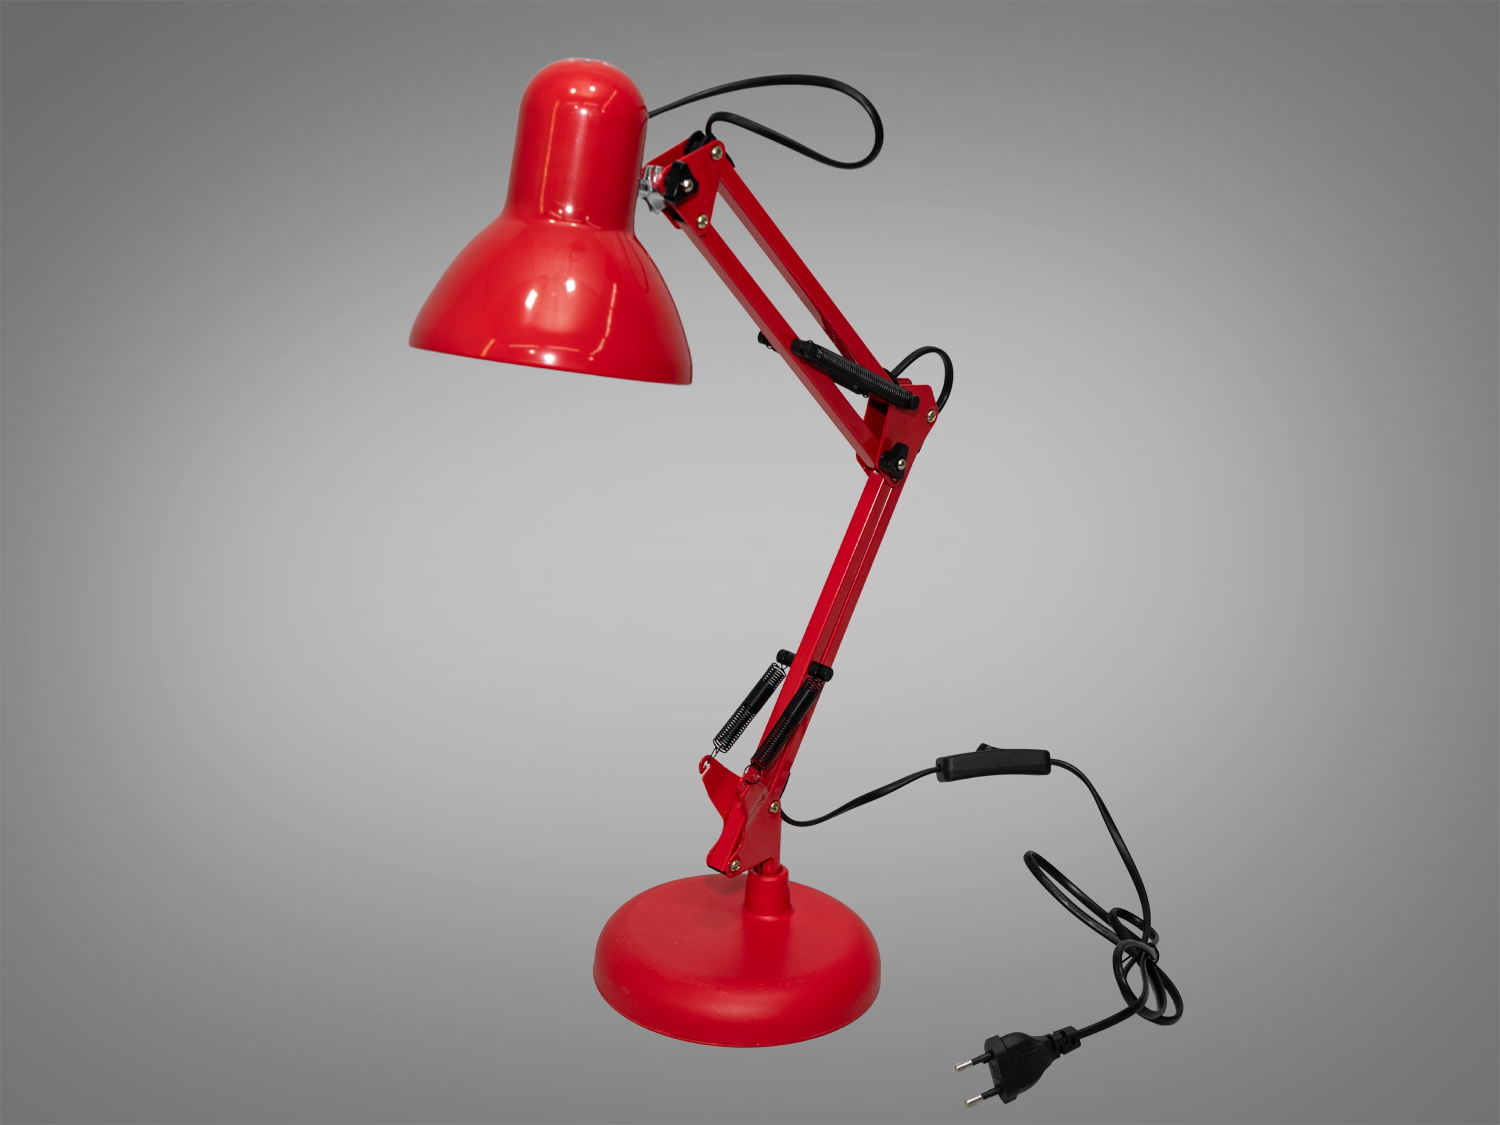 Яскрава настільна лампа в стилі Pixa для дитячої кімнати, колір червонийНастольные лампы, Новинки